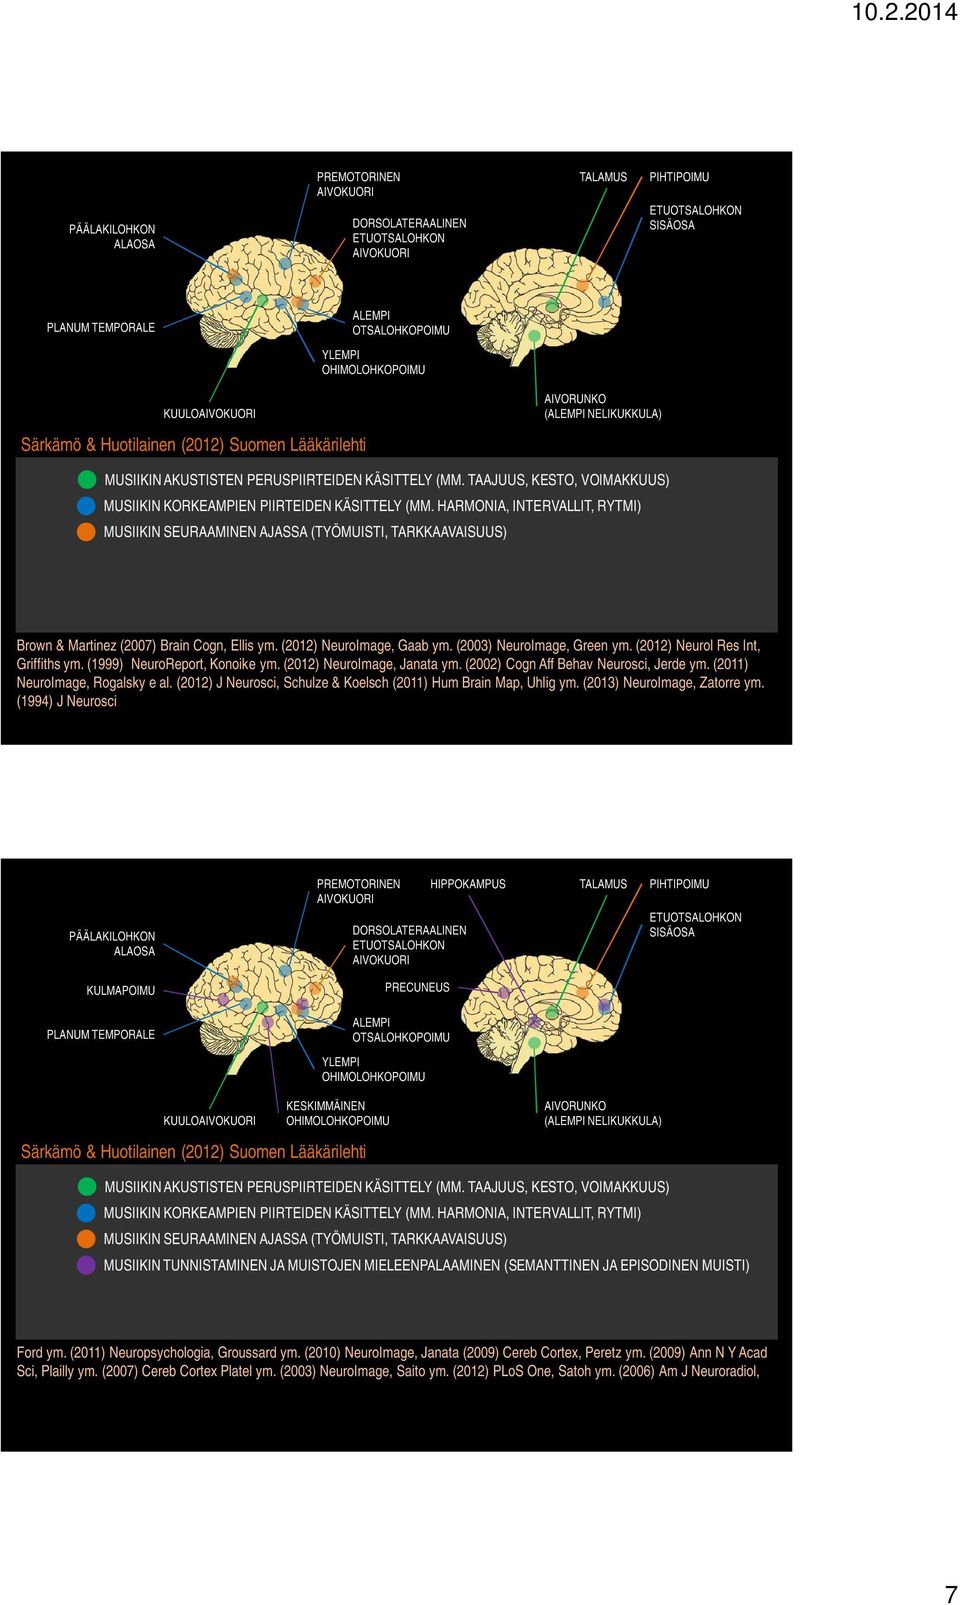 HARMONIA, INTERVALLIT, RYTMI) MUSIIKIN SEURAAMINEN AJASSA (TYÖMUISTI, TARKKAAVAISUUS) Brown & Martinez (2007) Brain Cogn, Ellis ym. (2012) NeuroImage, Gaab ym. (2003) NeuroImage, Green ym.